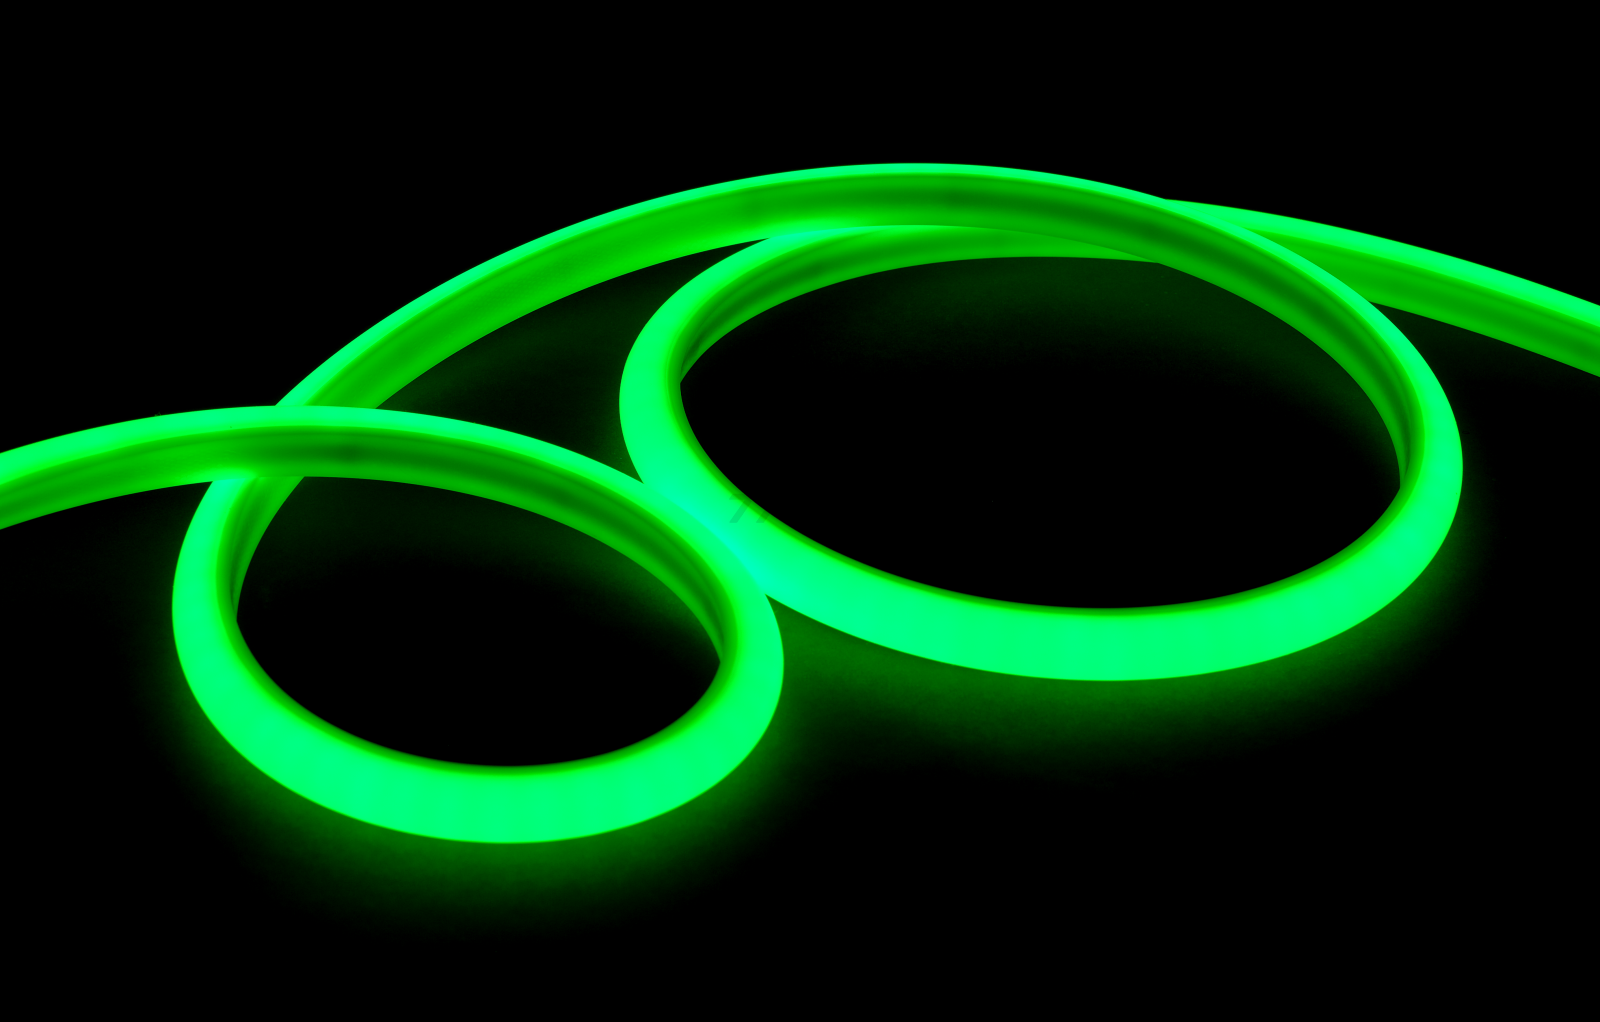 Лента светодиодная BYLED Neon BLS 2835/120 9,6 Вт/м 24В зеленый (019108) - Фото 3